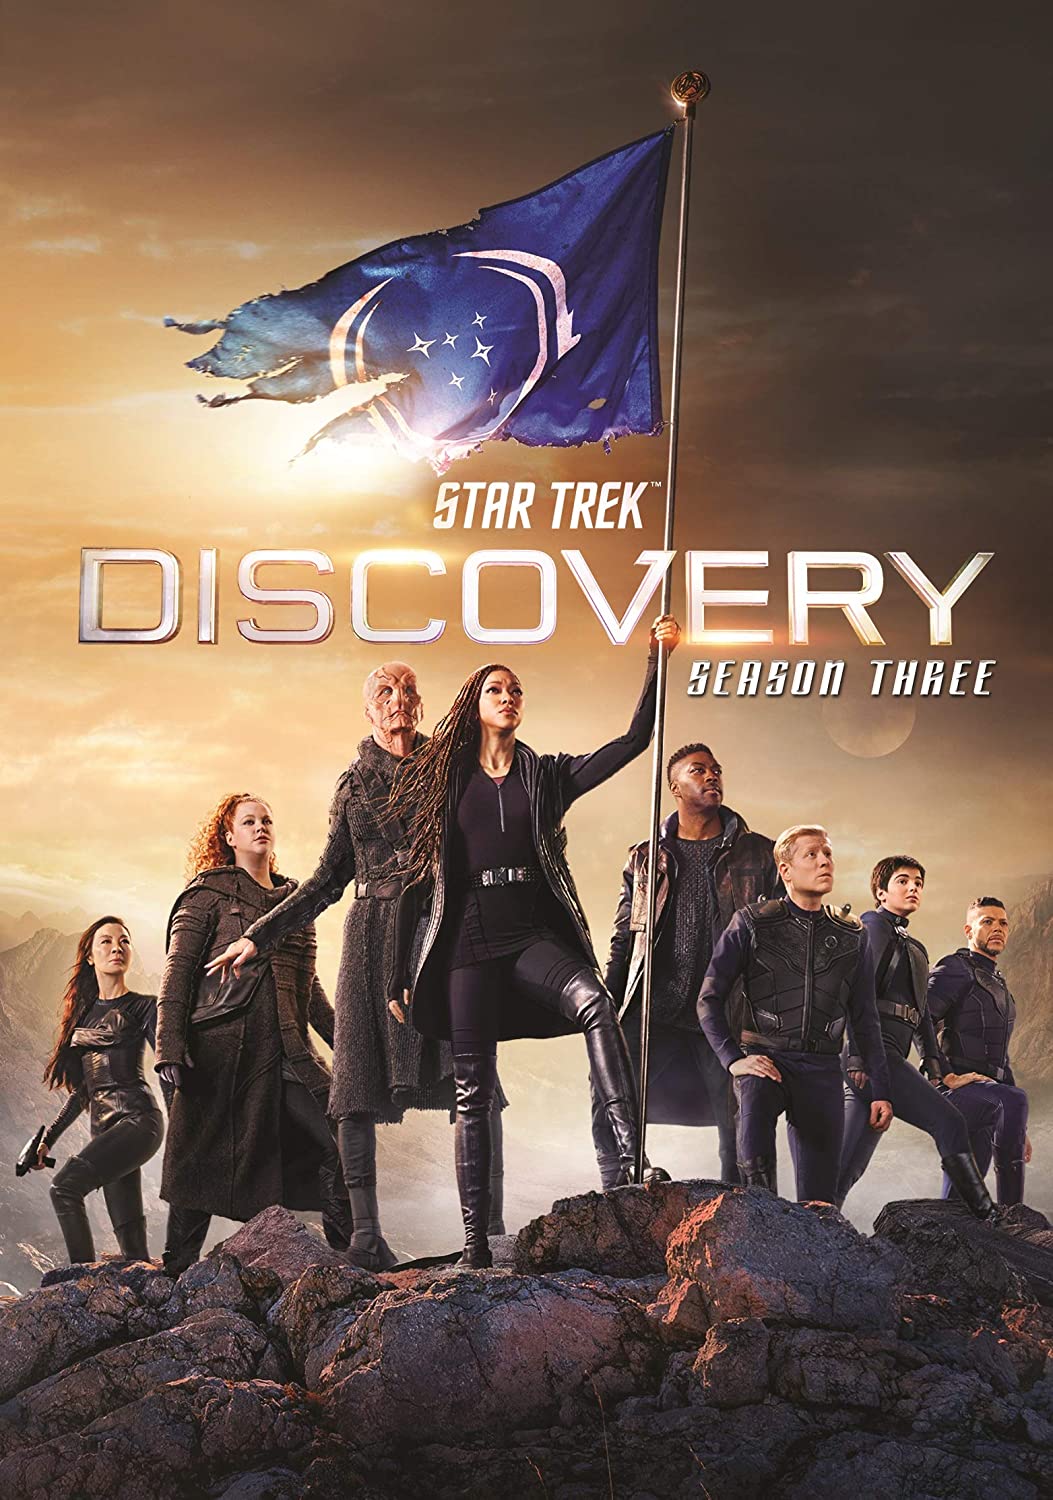 ดูหนังออนไลน์ฟรี Star Trek Discovery Season 3 EP1 สตาร์ เทรค ดิสคัฟเวอรี่ ซีซั่นที่ 3 ตอนที่ 1